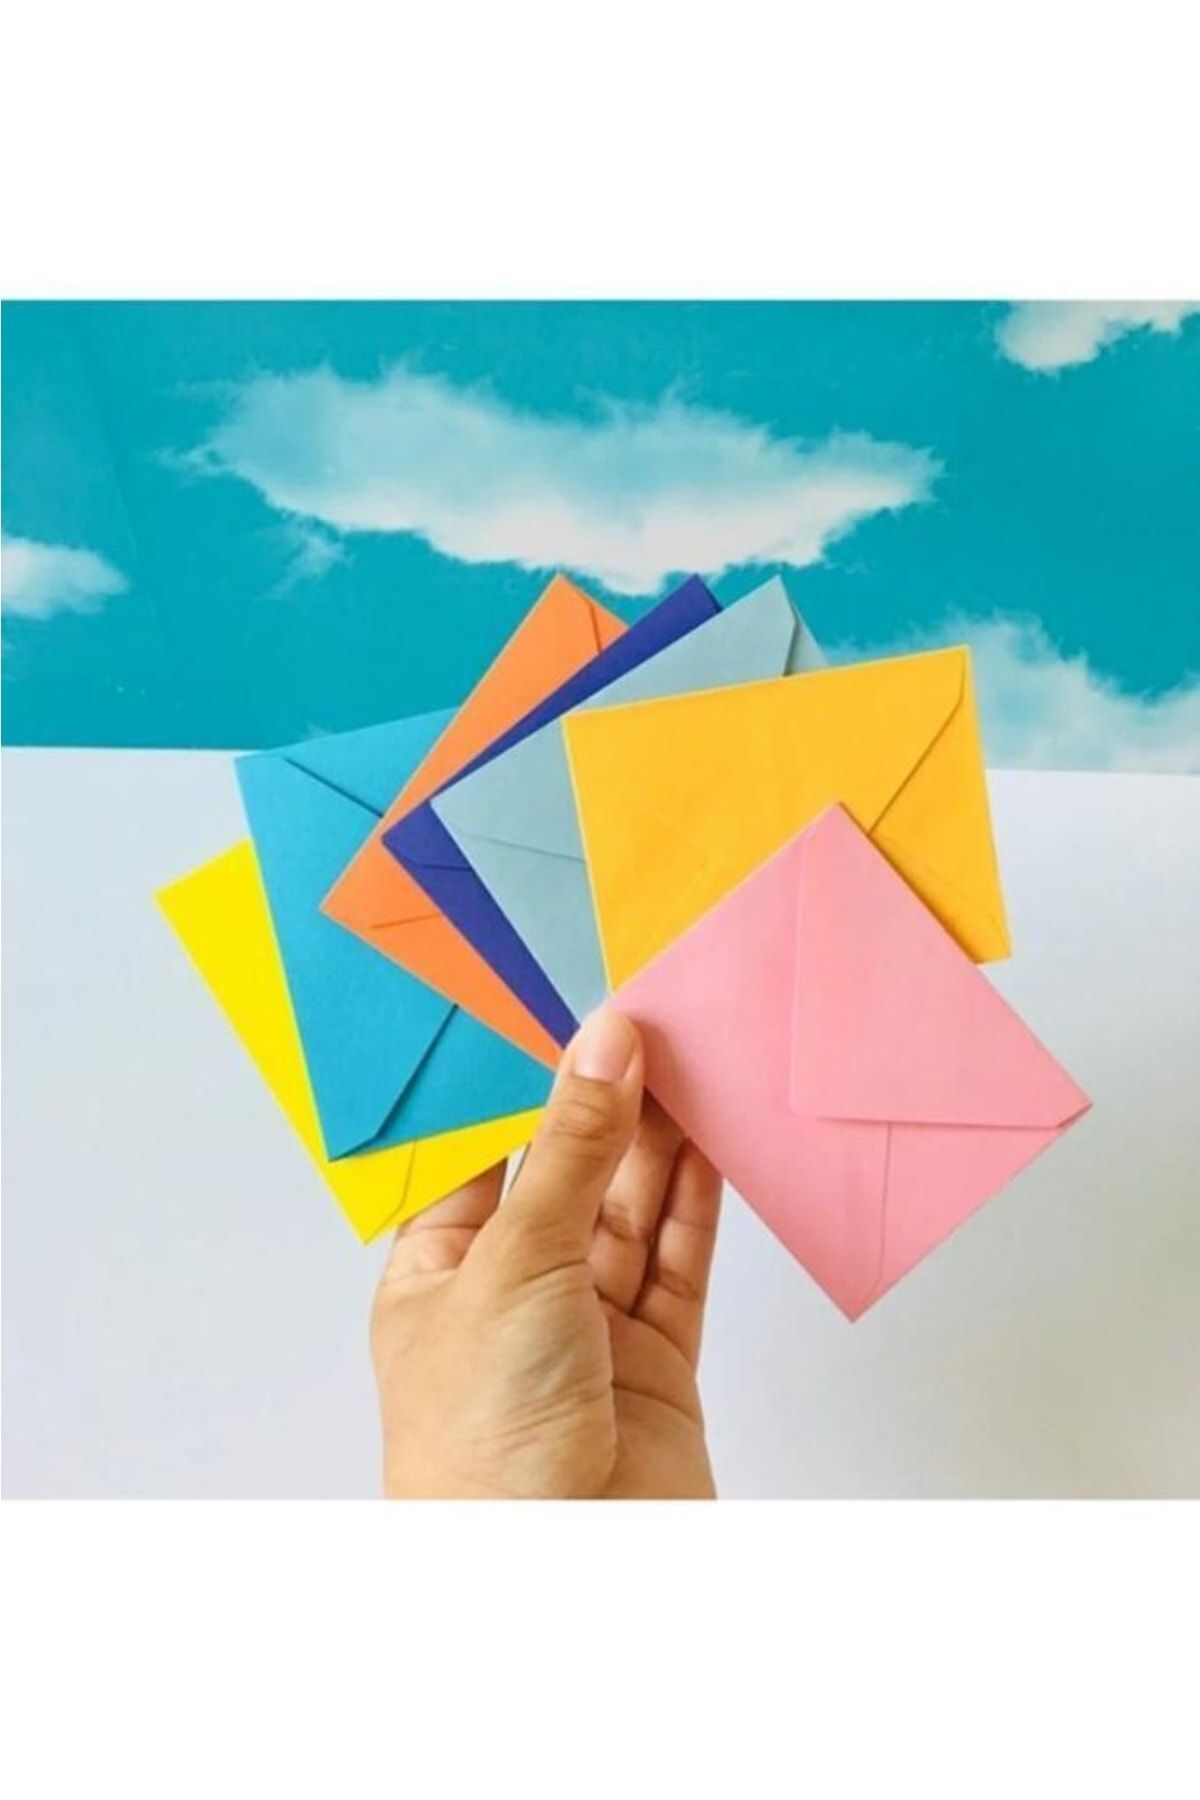 İstisna Mini Zarf 100 Adet Küçük 10 Farklı Renk 70x90mm Hediye Doğum Günü Dilekleri Zarfı